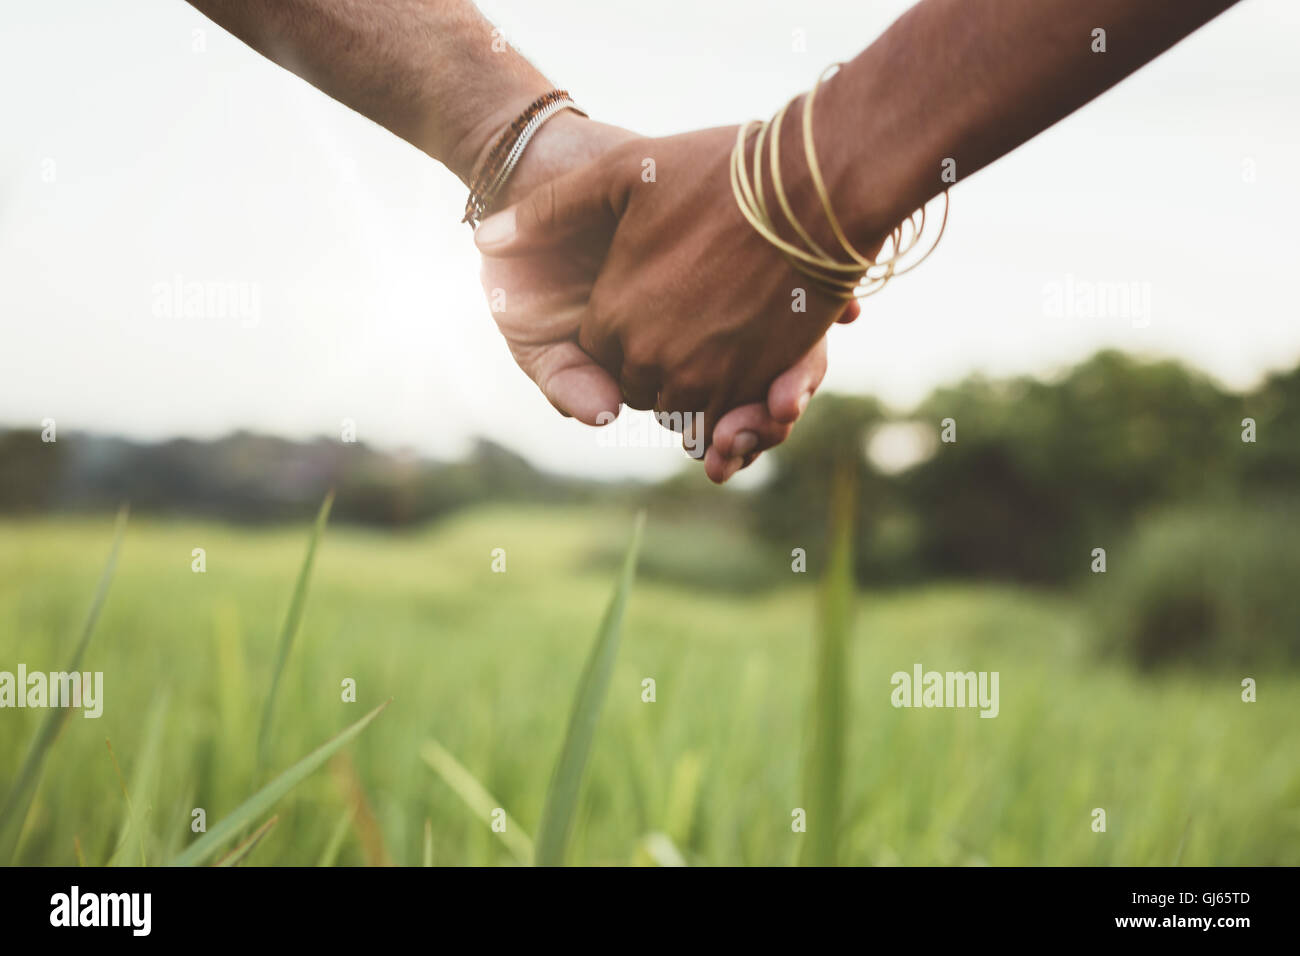 Immagine ravvicinata di coppia giovane tenendo le mani nel campo all'esterno. Uomo e donna mano nella mano sul prato. Foto Stock